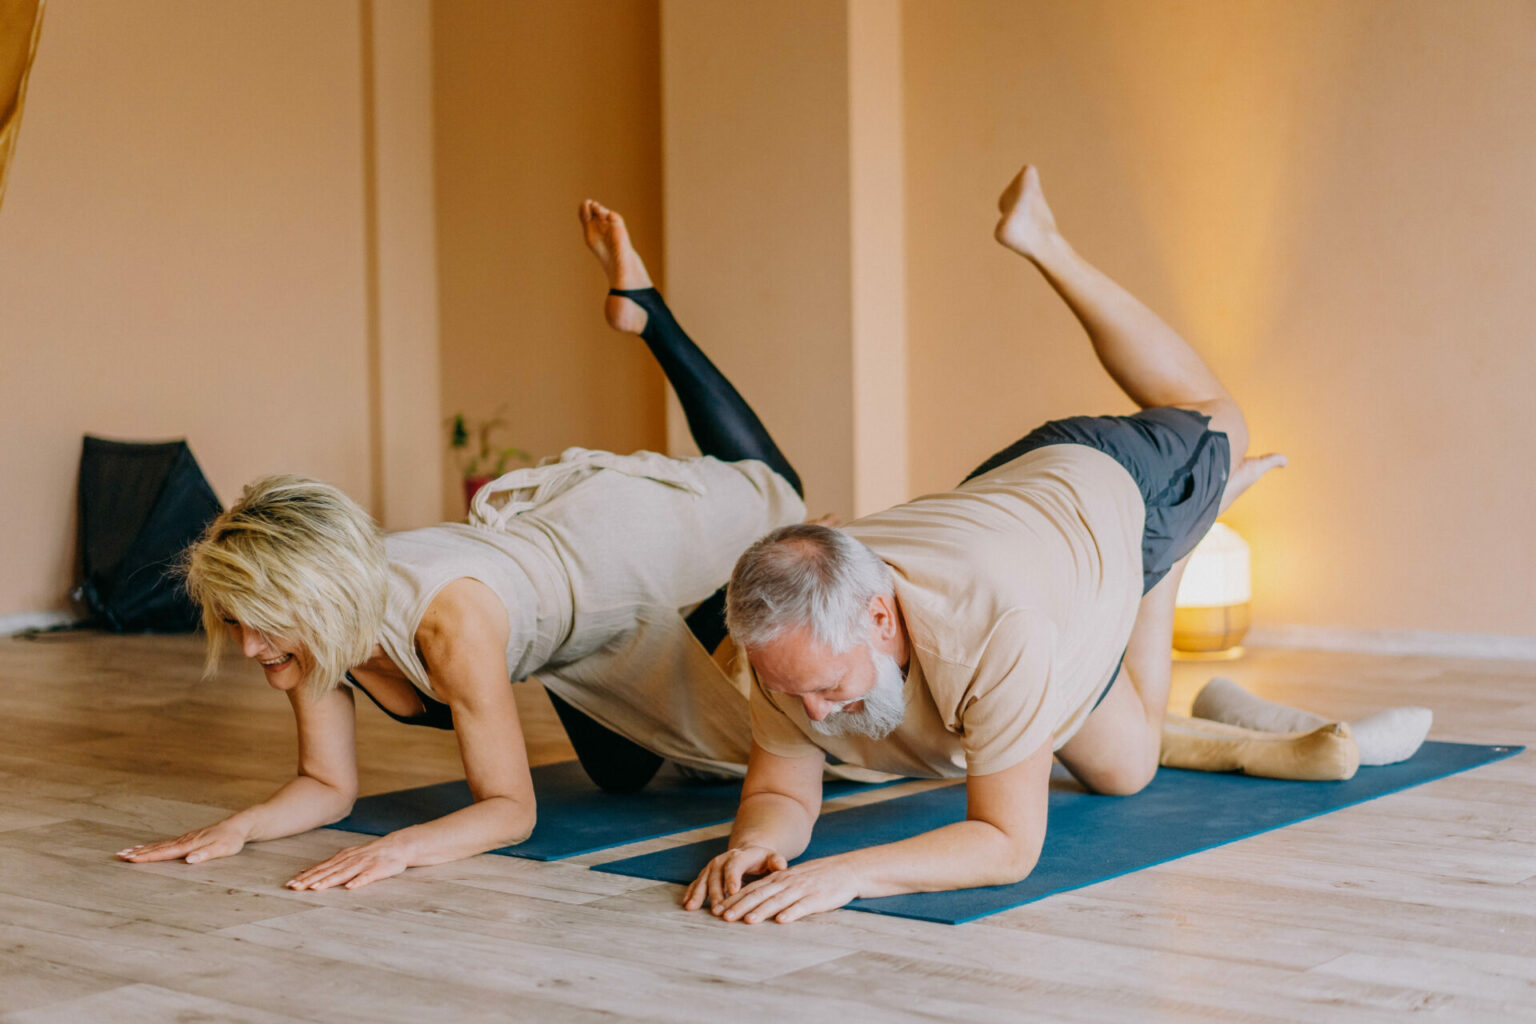 Zwei ältere Menschen auf Yogamatten mit Bein in der Luft.